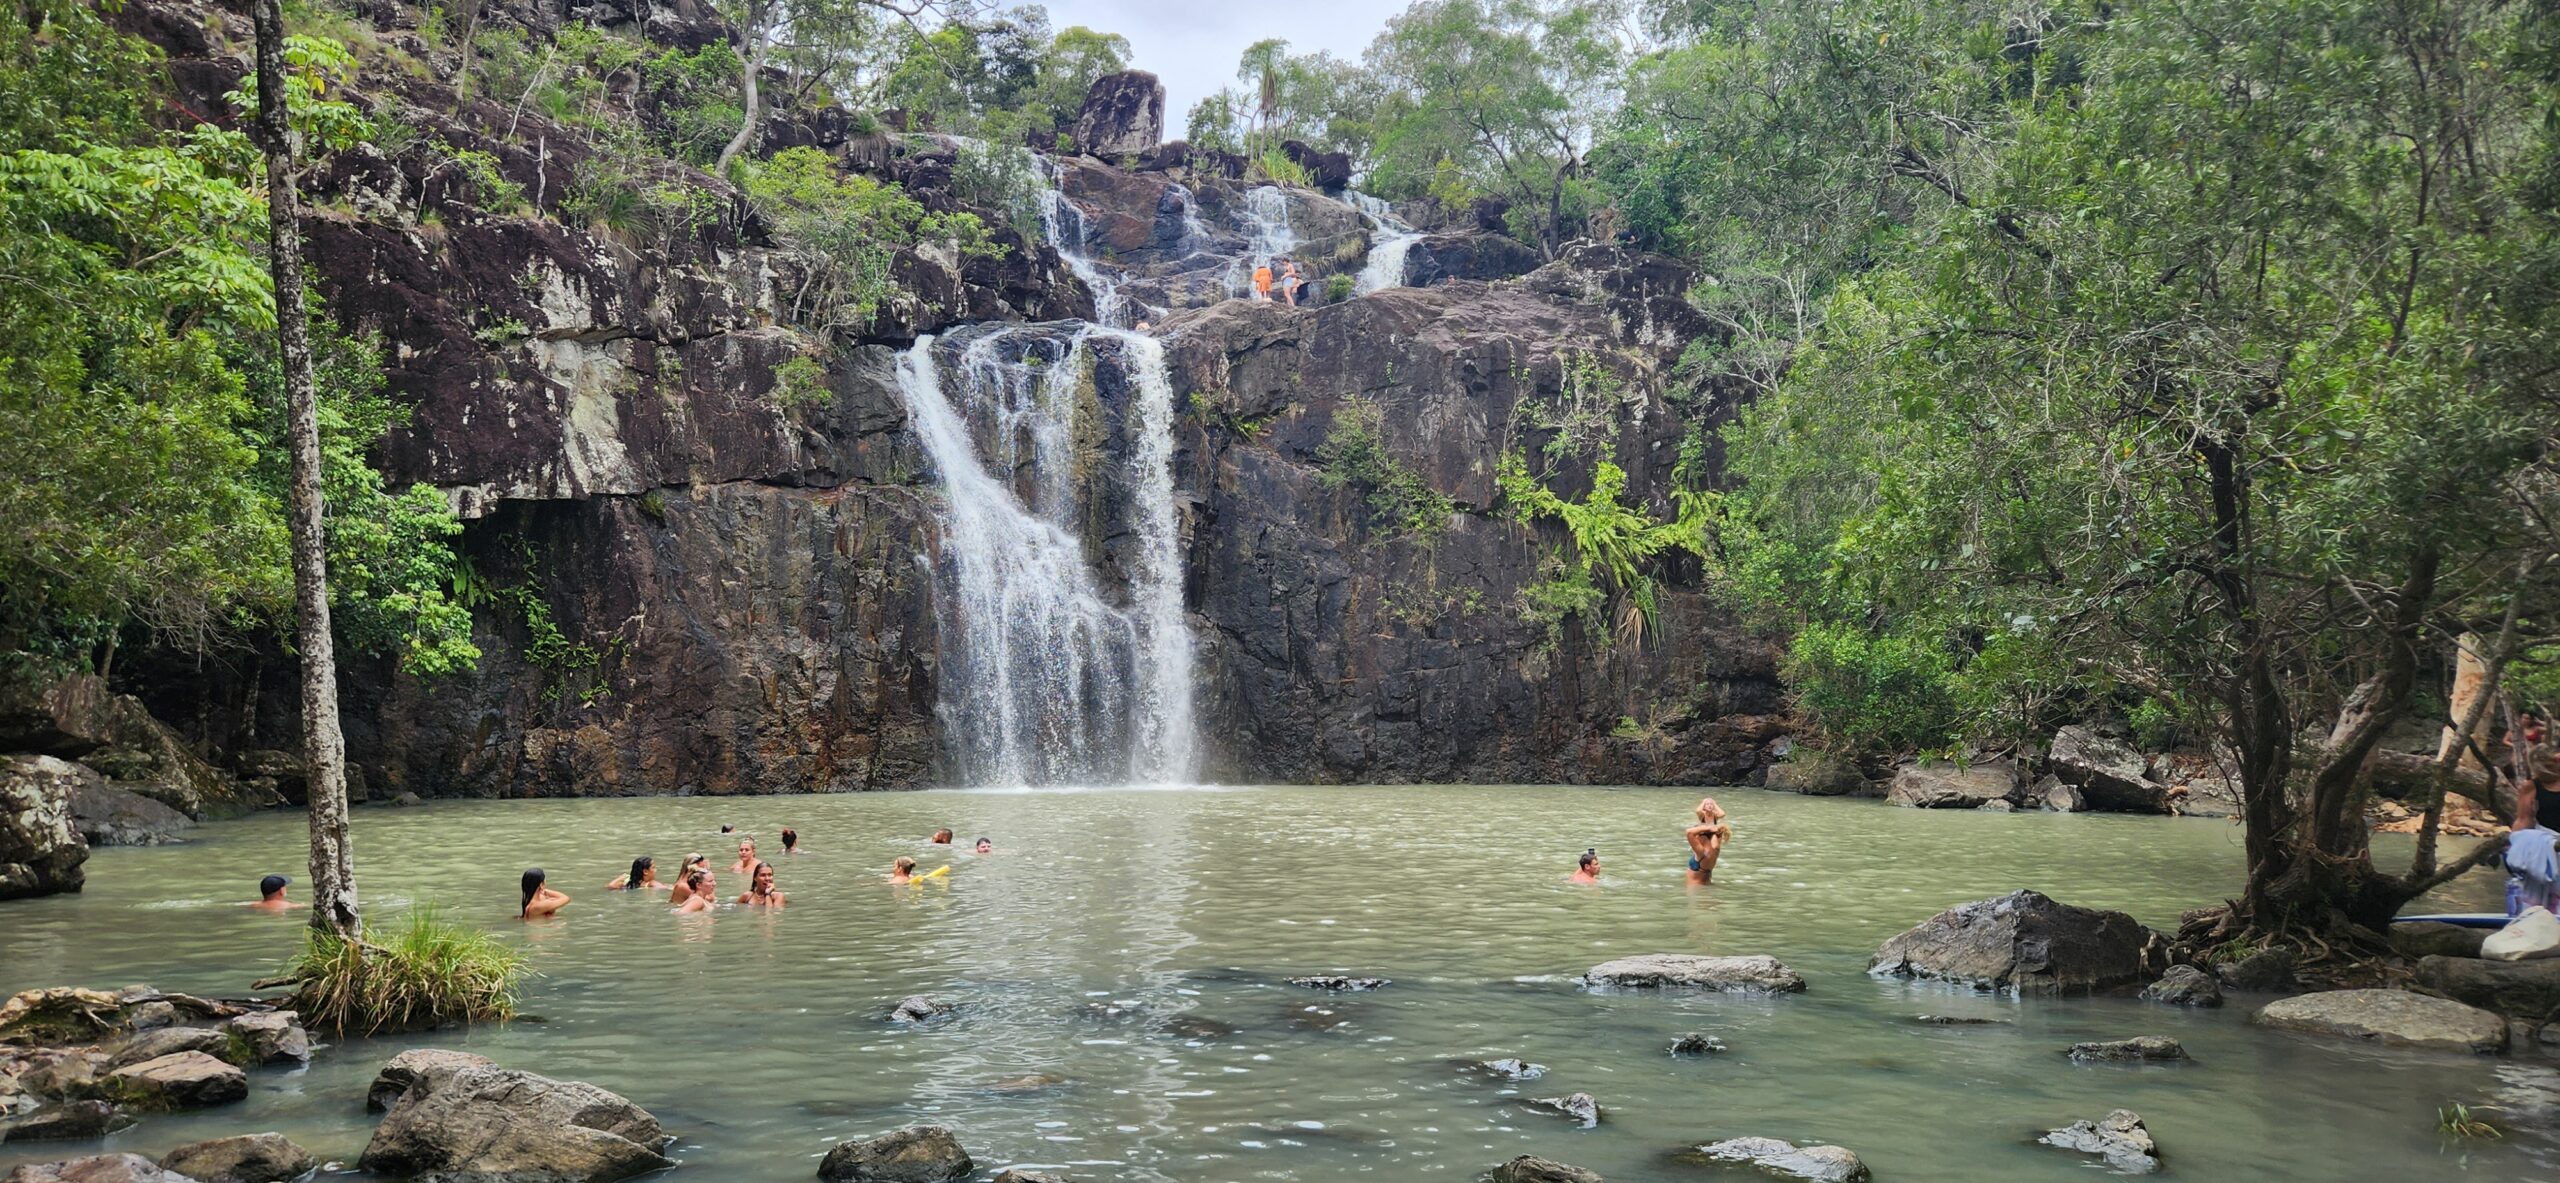 Resort and waterfall